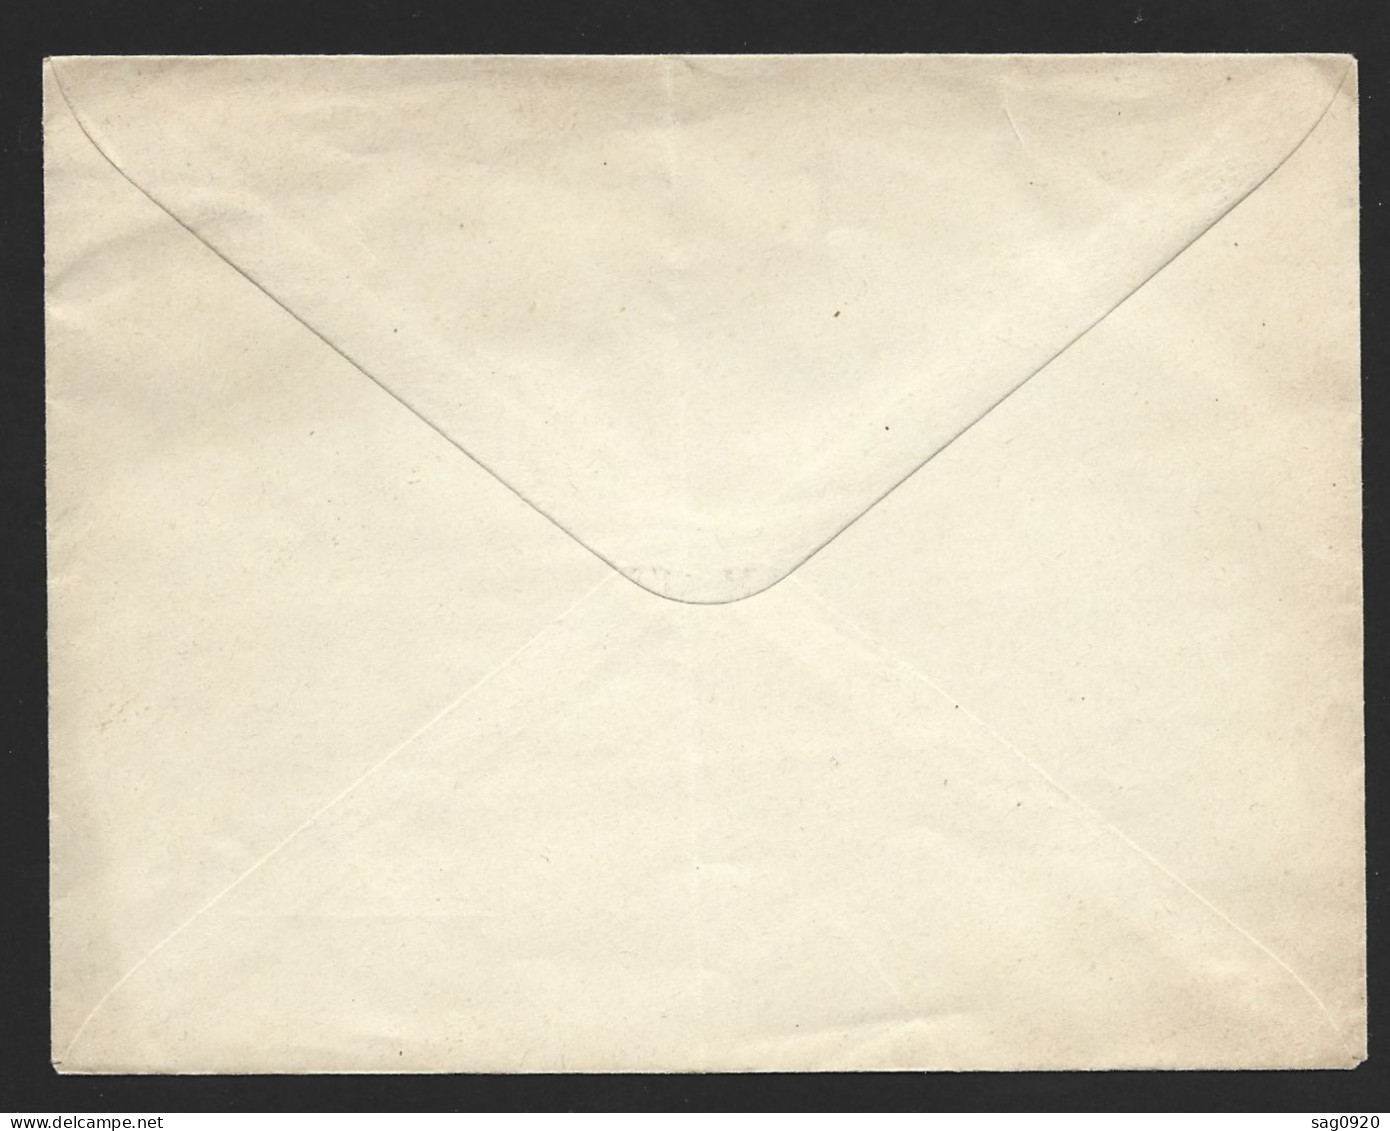 Entier Postal-Enveloppe Type Paix Avec Repiquage Jammes & Wanecq - Cartes Postales Repiquages (avant 1995)